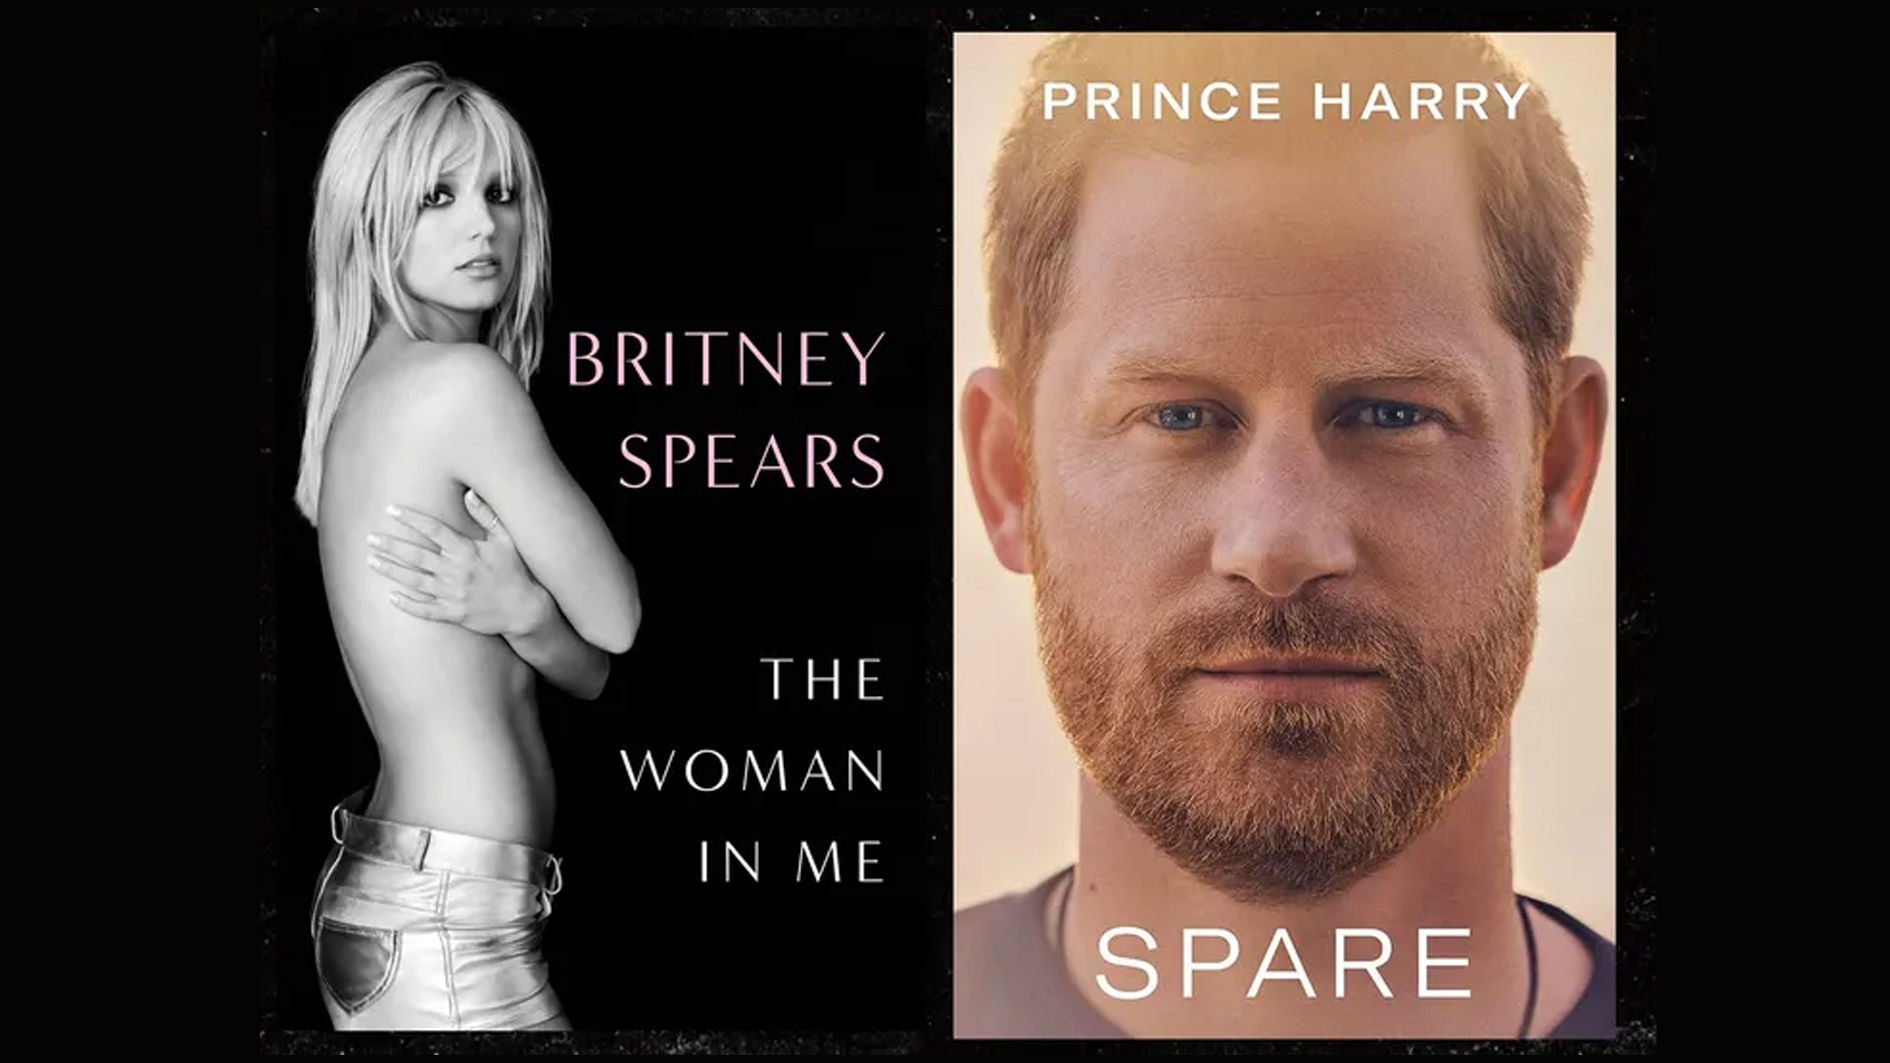 Britney Spears records good first week sales of her memoir